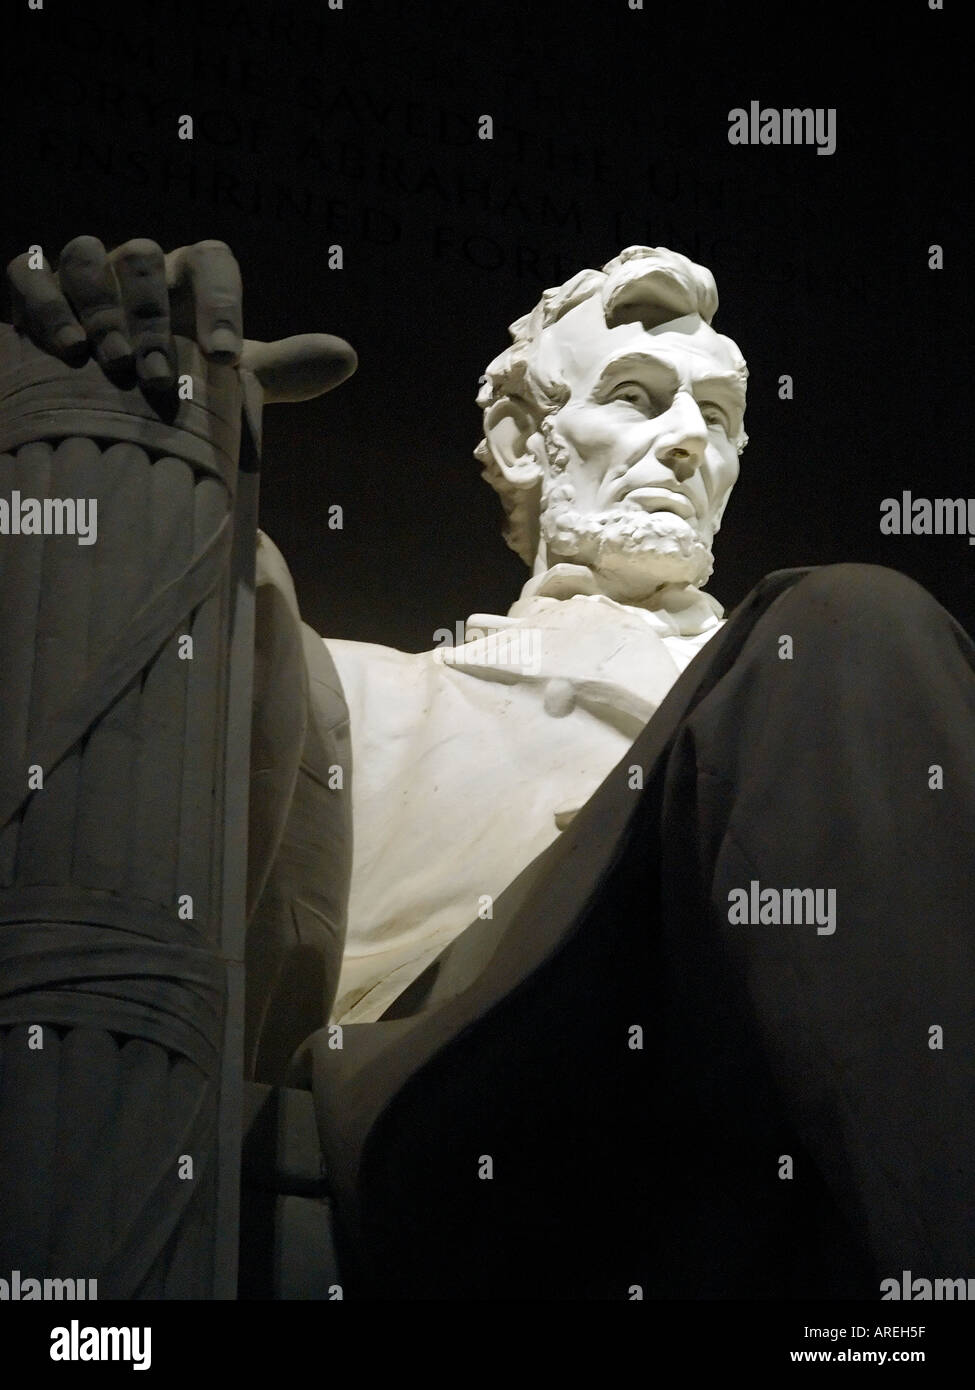 Vue de la statue d'Abraham Lincoln dans le Lincoln Memorial à Washington DC nuit Banque D'Images